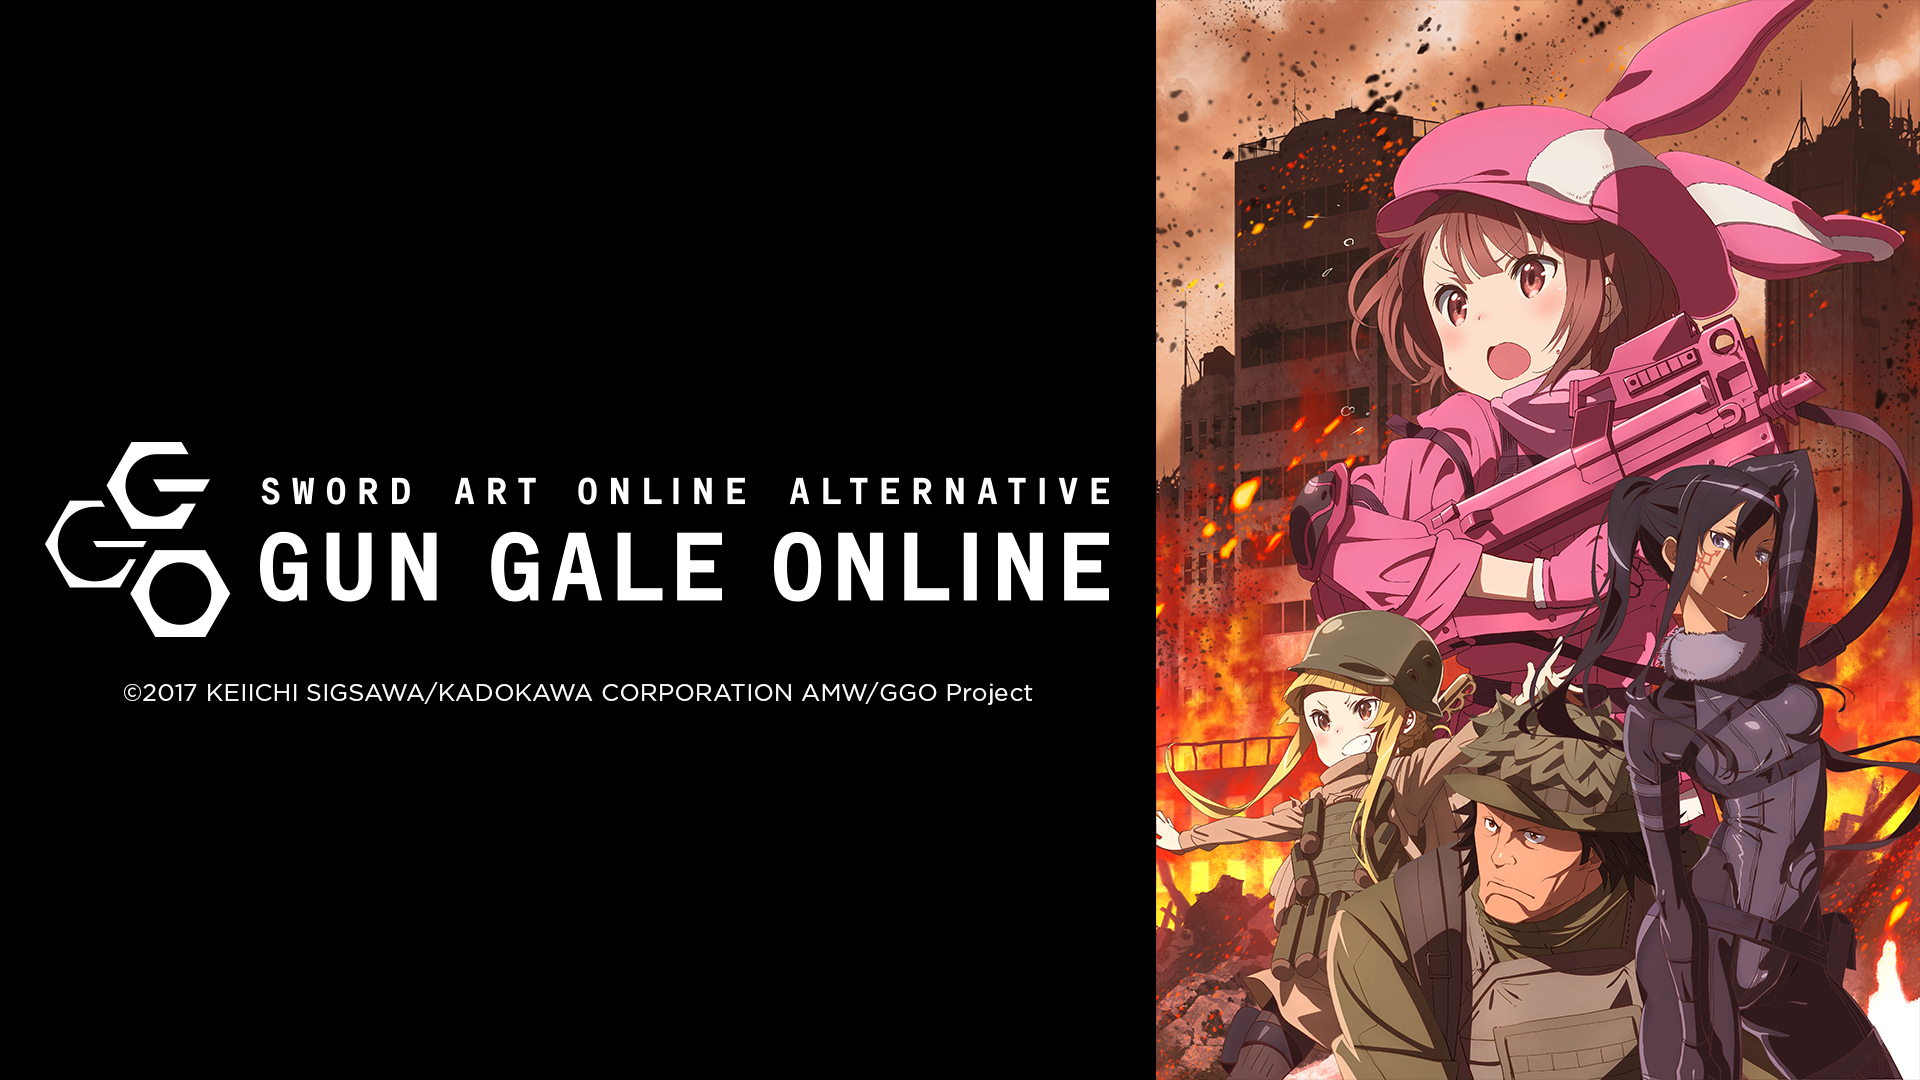 Đao Kiếm Thần Vực: Thế Giới Khác - Sword Art Online Alternative Gun Gale  Online - 12 Tập | VieON